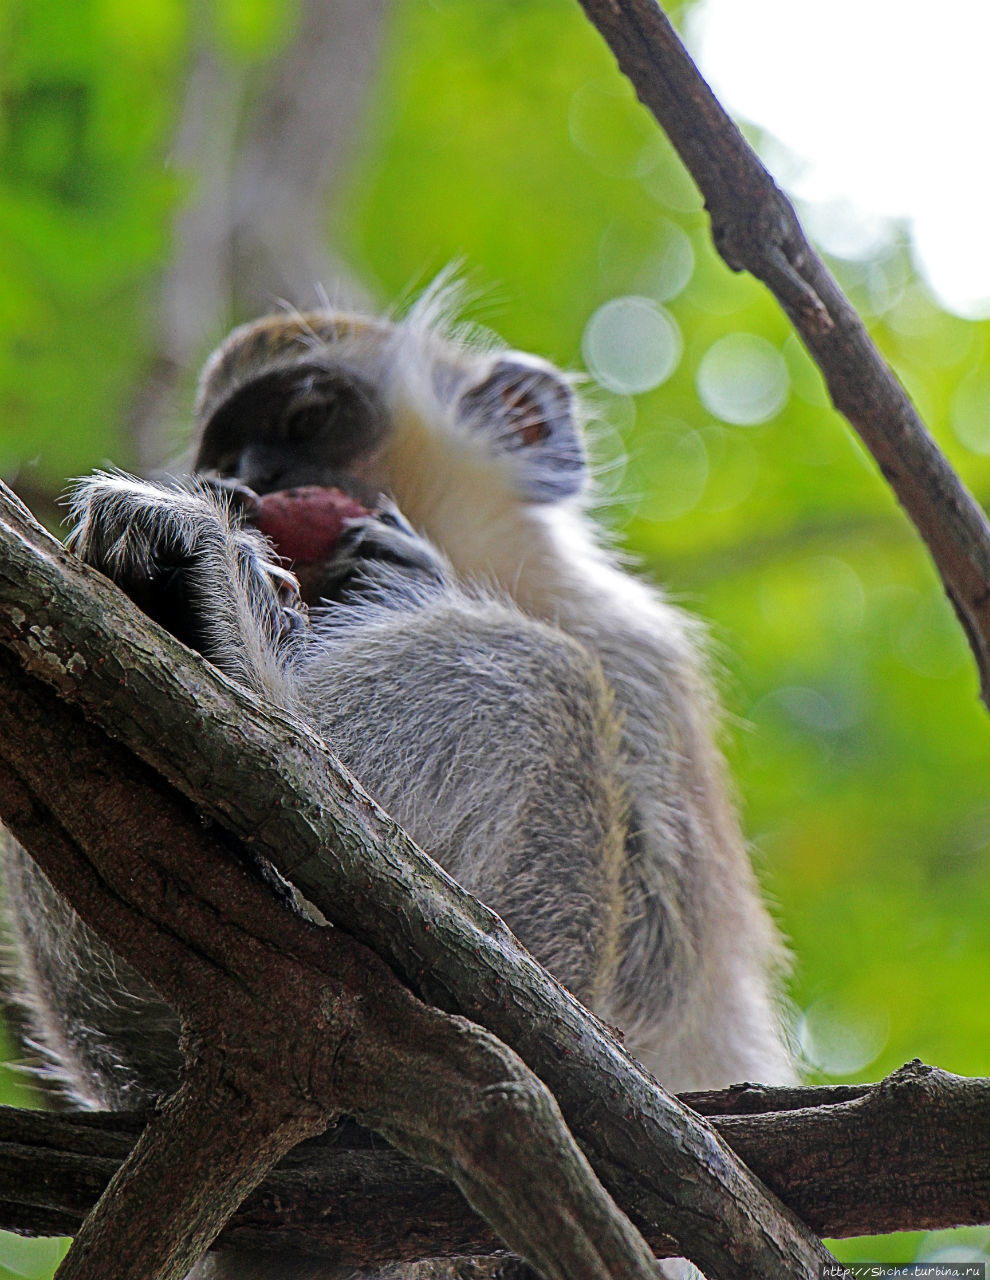 А-а, и зеленый... обезьян Барбадосский природный резерват, Барбадос